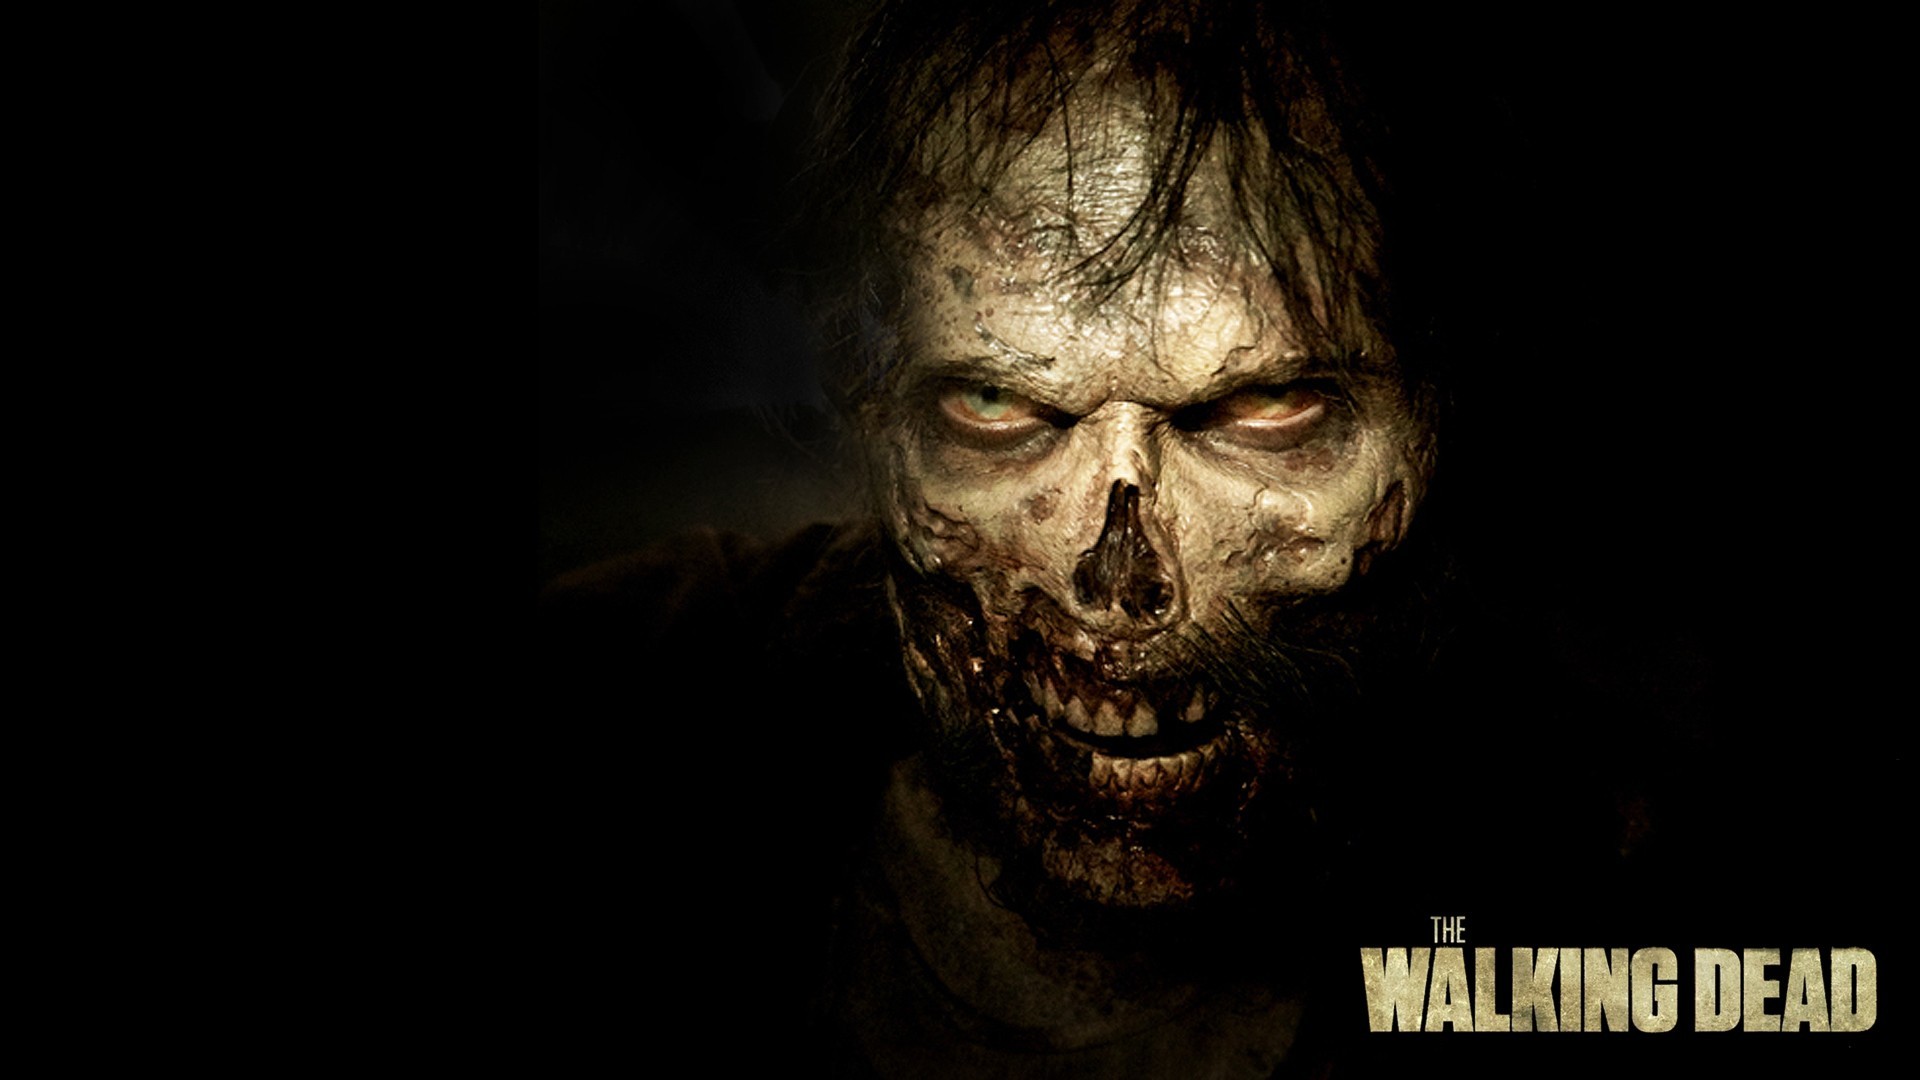 The Walking Dead Season 5 – Them Walking Dead Zombie Wallpaper in 1920